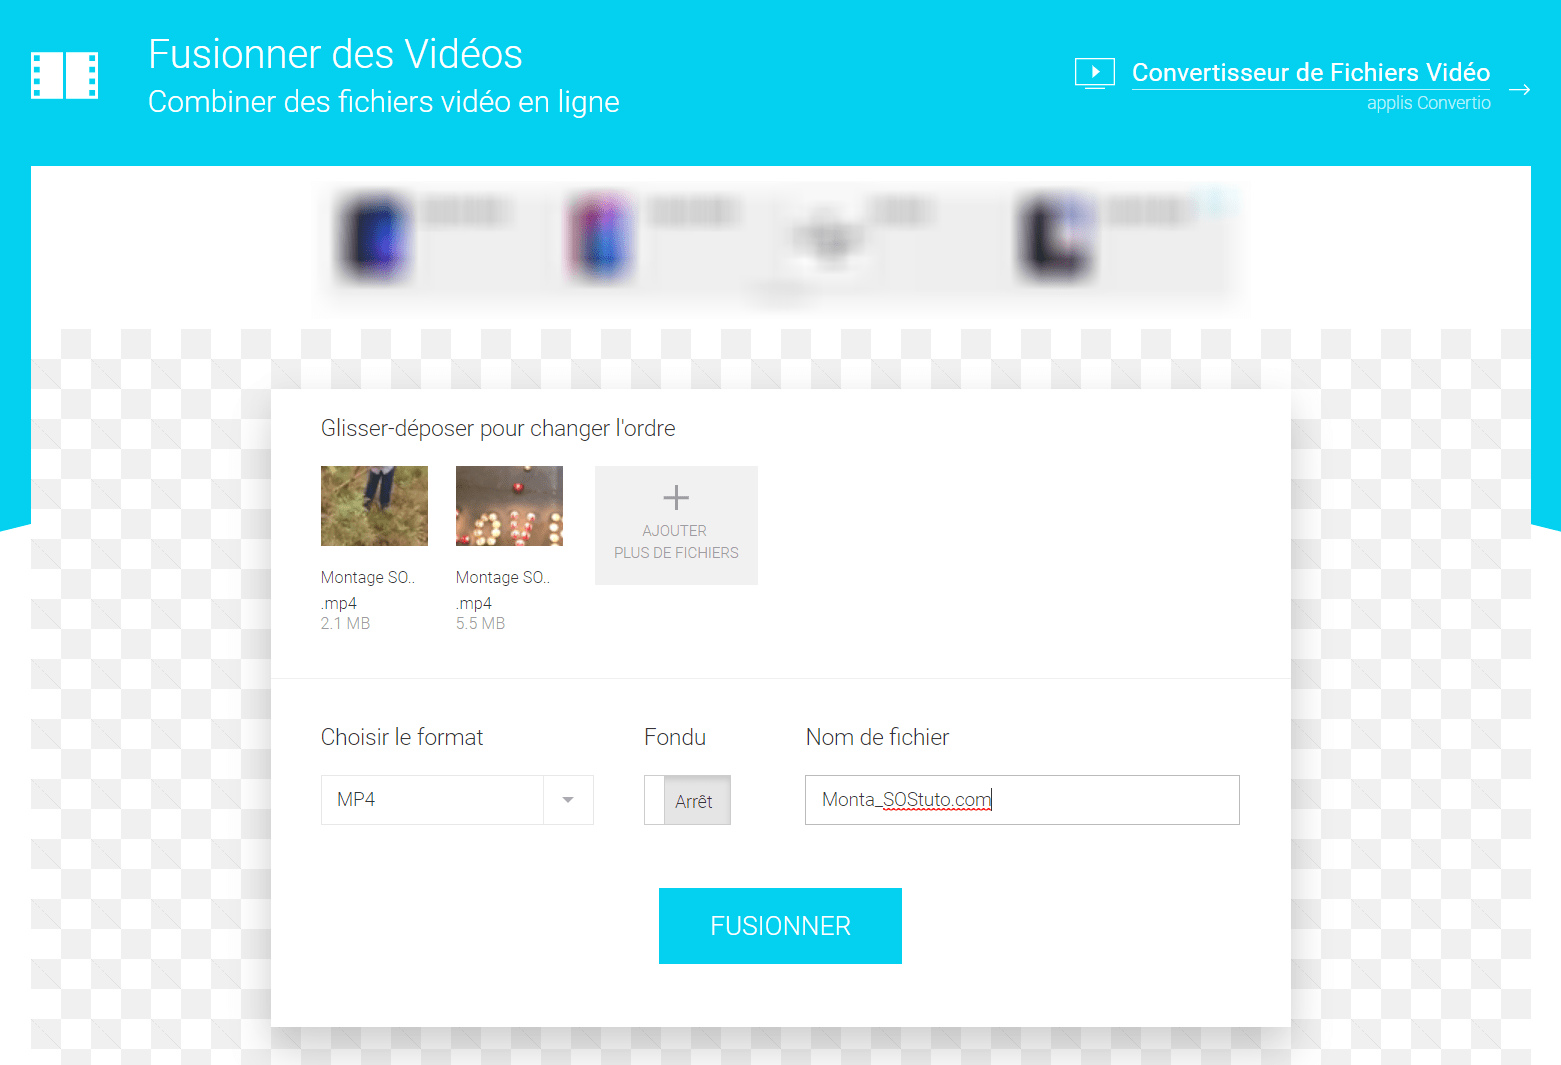 Merge Video Online 2 Outils pour Fusionner plusieurs Vidéos en 1 seul fichier vidéo rapidement